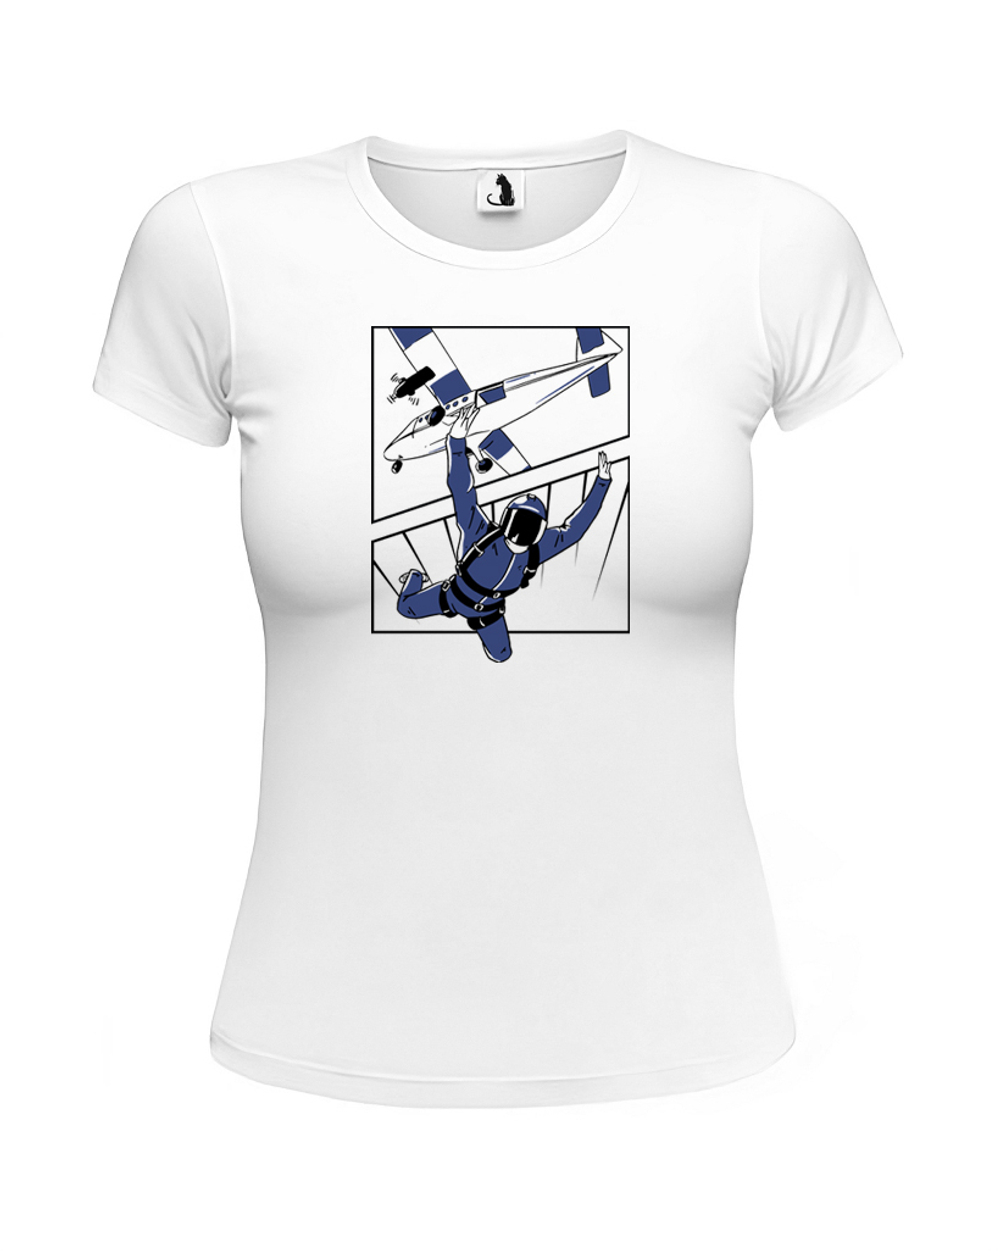 Футболка с парашютистом женская приталенная белая с синим рисунком